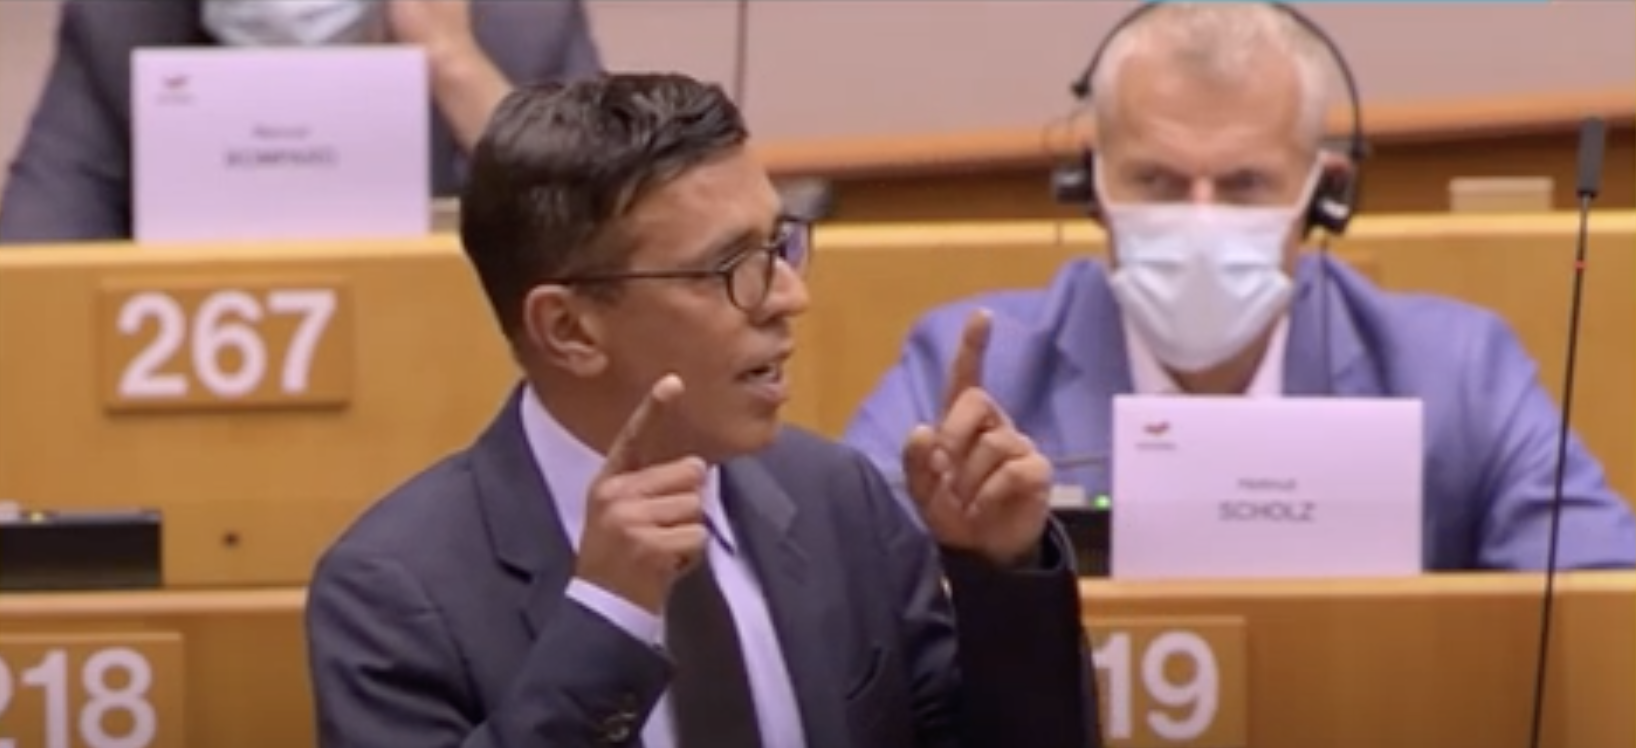 Vidéo - "Vote historique au Parlement européen" reconnaissant l’esclavage comme crime contre l’humanité